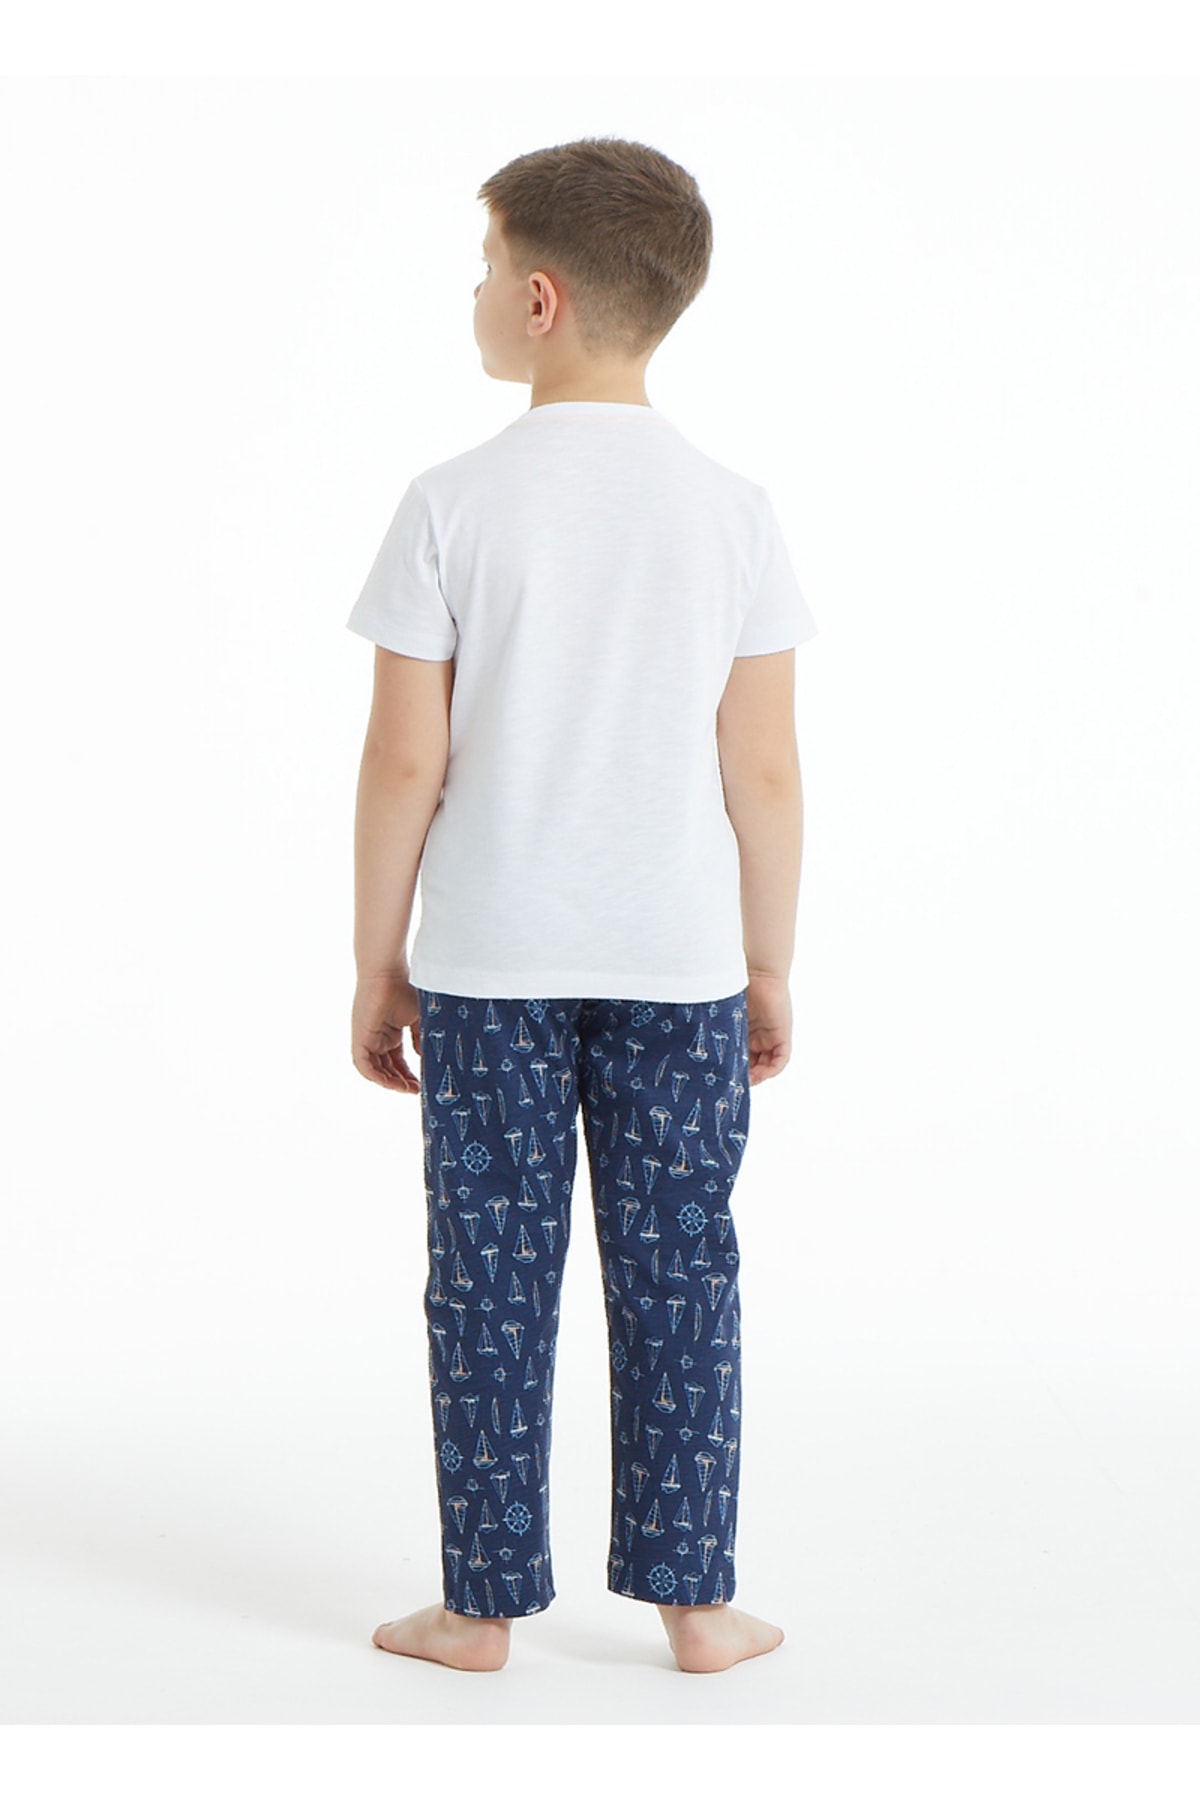 Blackspade Erkek Çocuk Pijama Takımı 30839 - Beyaz